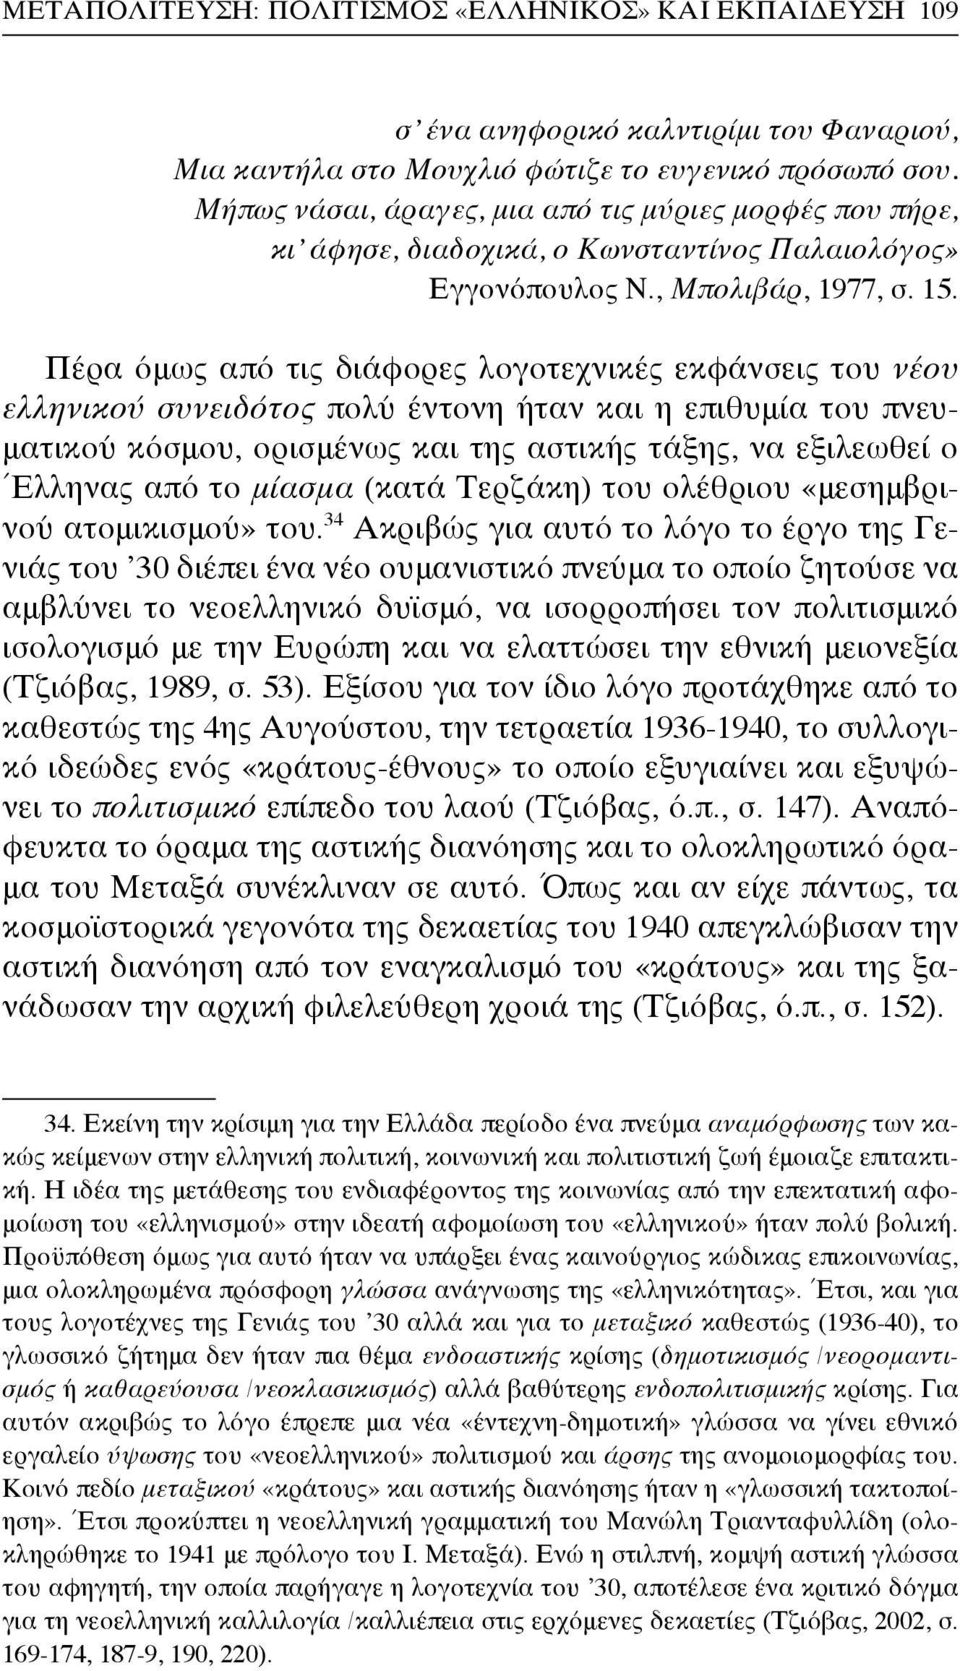 Πέρα όμως από τις διάφορες λογοτεχνικές εκφάνσεις του νέου ελληνικού συνειδότος πολύ έντονη ήταν και η επιθυμία του πνευματικού κόσμου, ορισμένως και της αστικής τάξης, να εξιλεωθεί ο Έλληνας από το